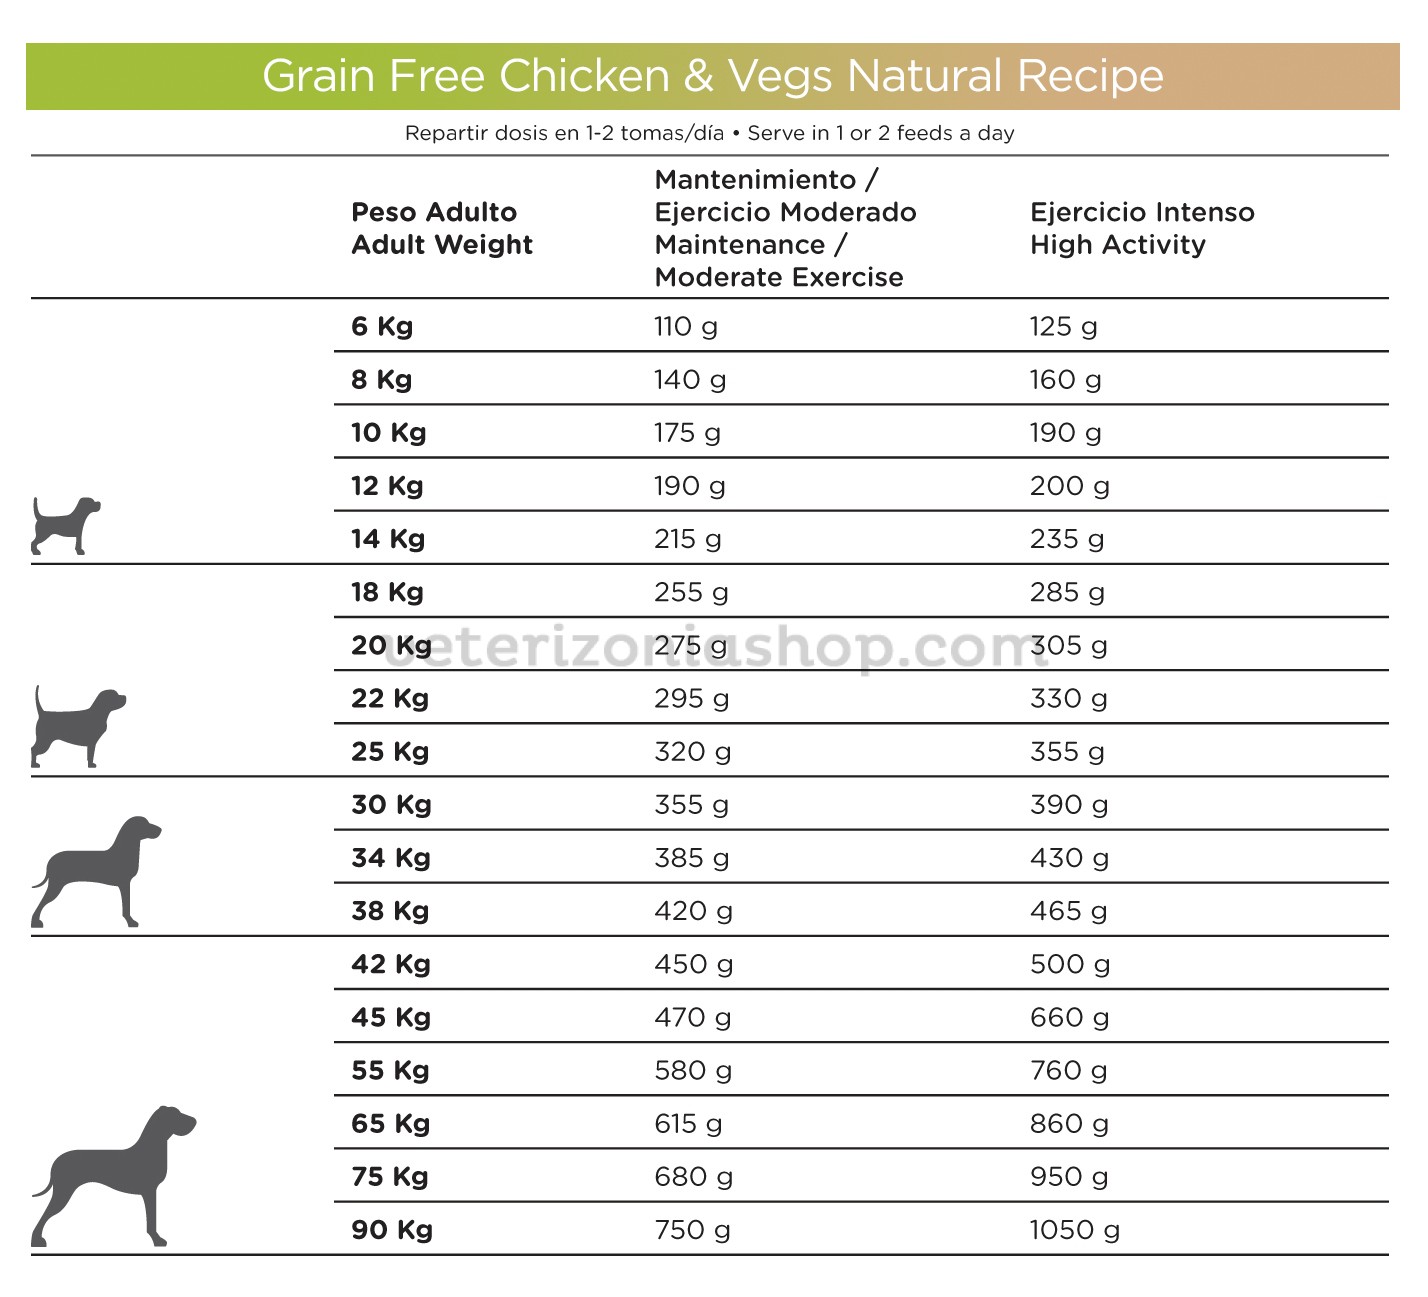 Pienso Grain perros Chicken&Vegs Natura Diet -